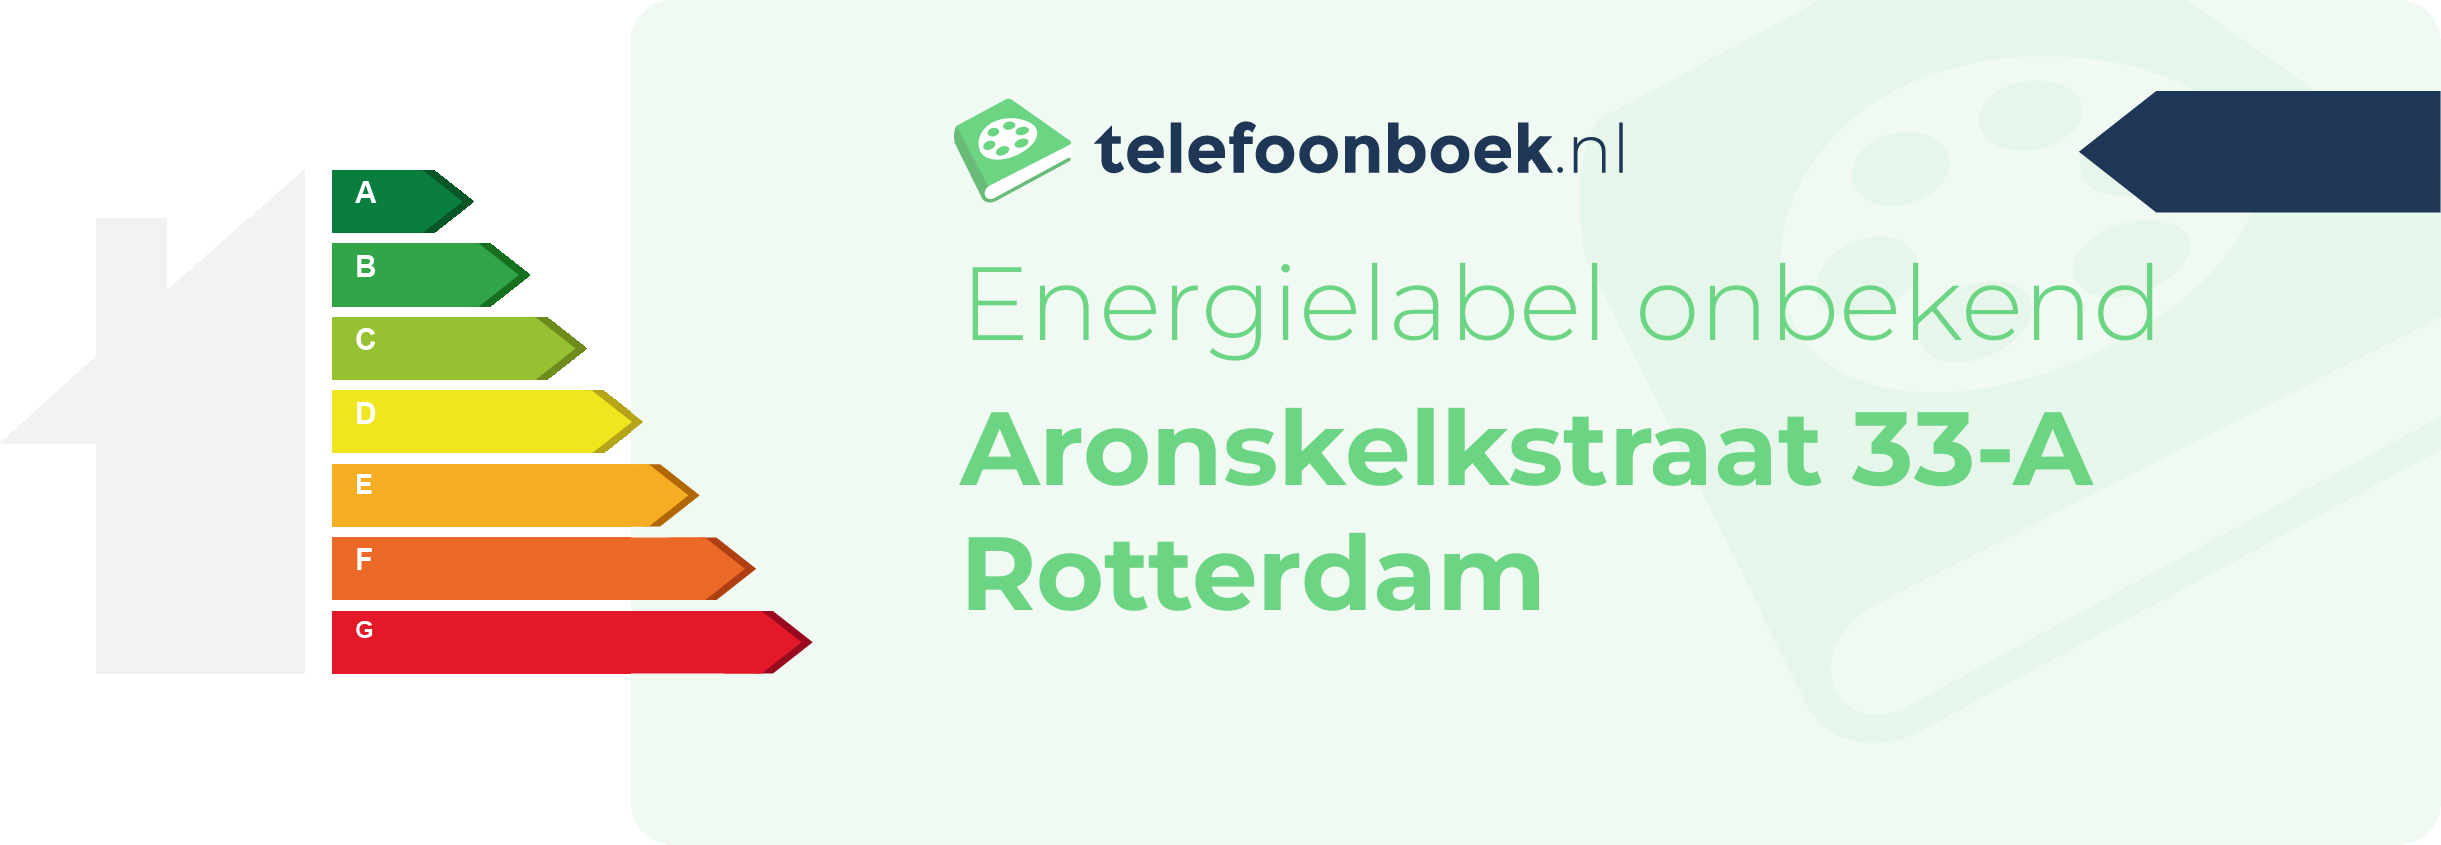 Energielabel Aronskelkstraat 33-A Rotterdam